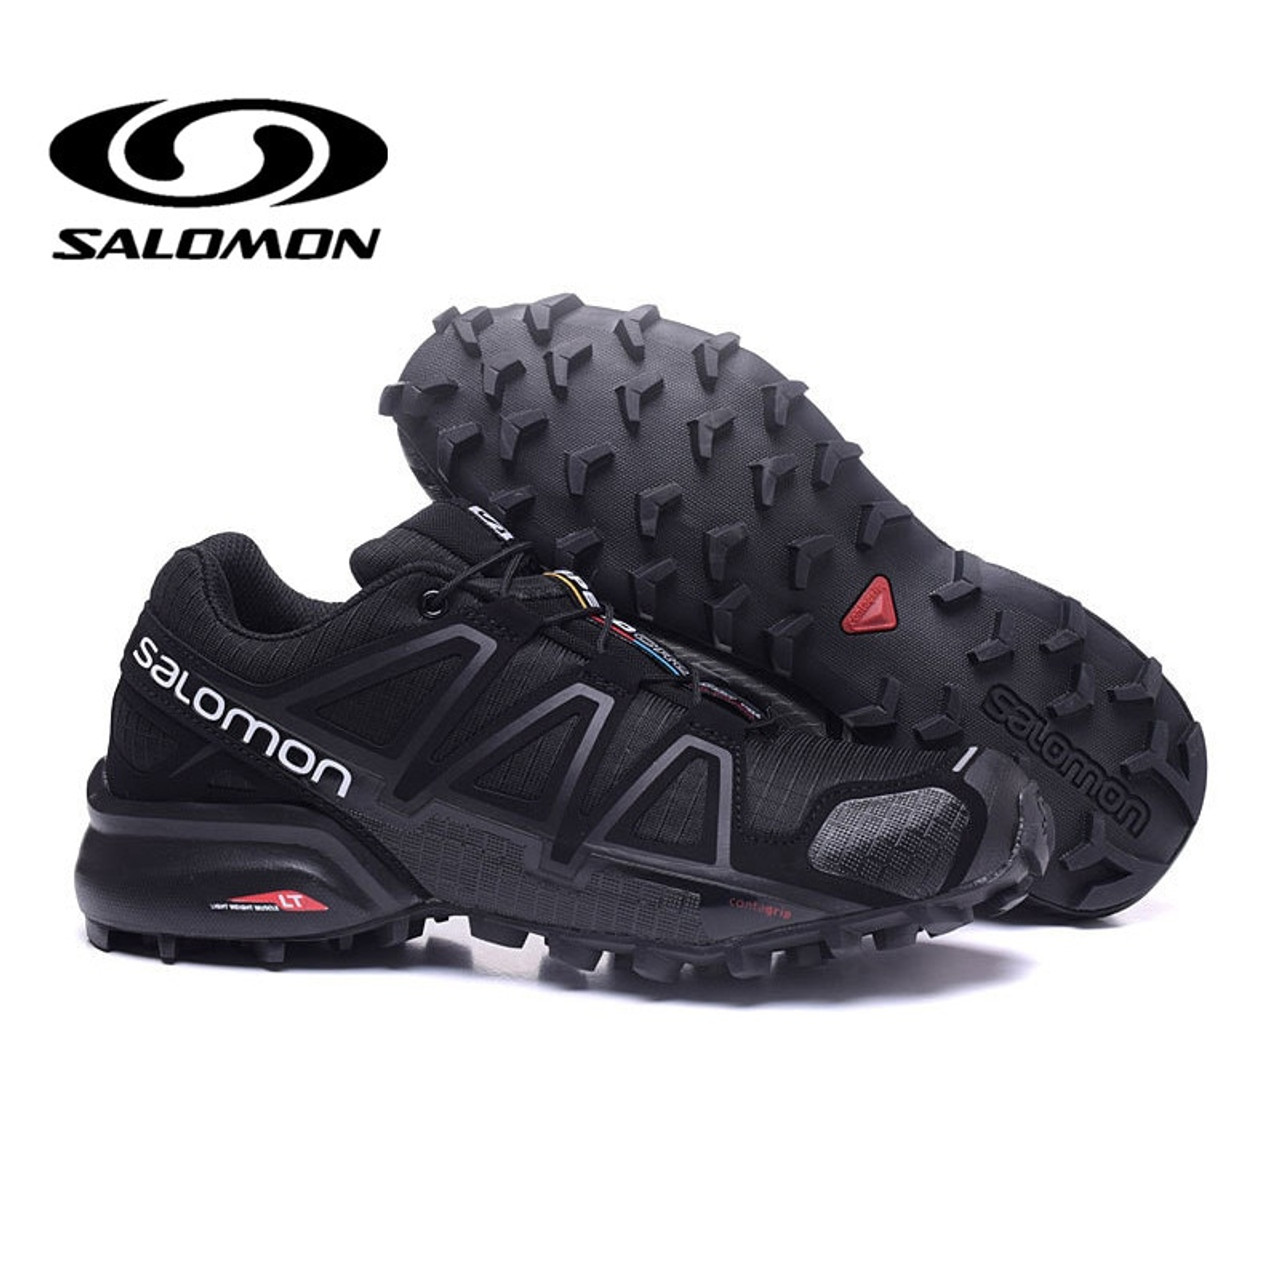 new salomon shoes 2019